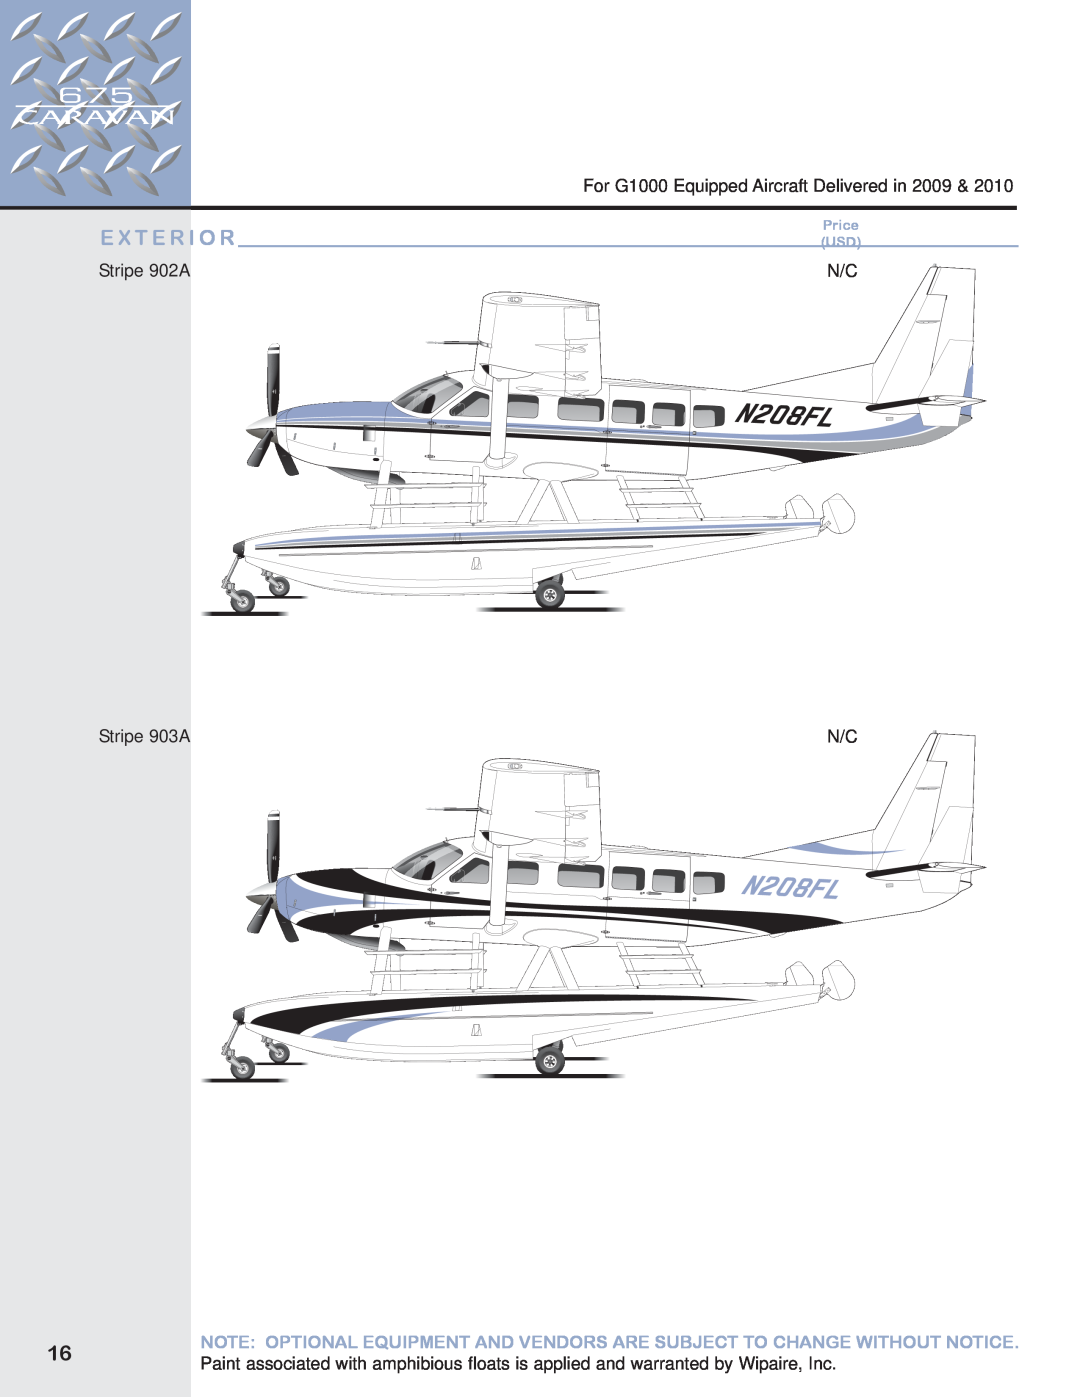 Garmin 675 manual E X T E R I O R, For G1000 Equipped Aircraft Delivered in, Stripe 902A, Stripe 903A, Price USD 